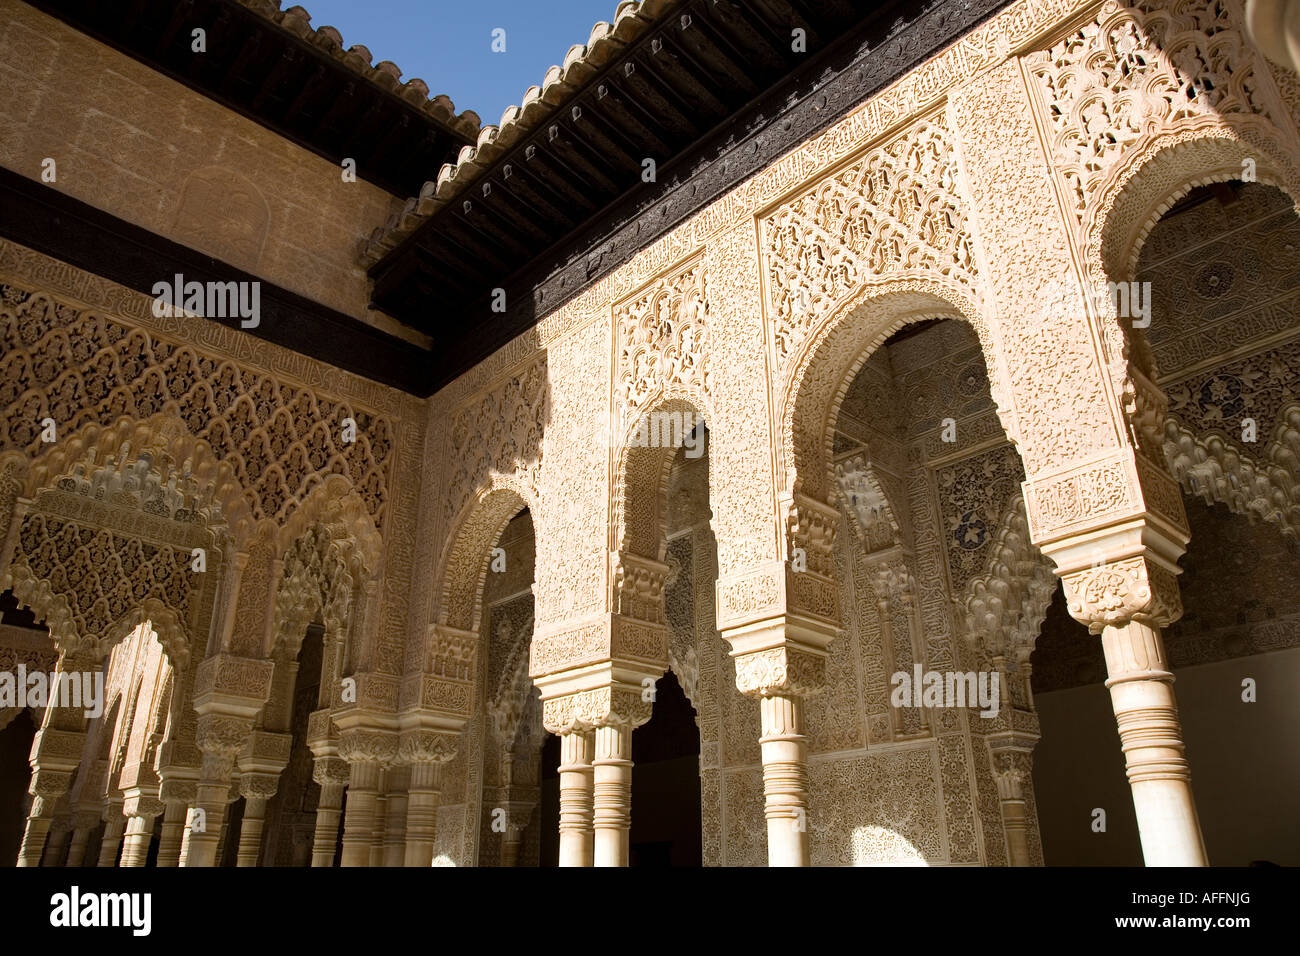 Détail de l'arcade de piliers sculptés dans le Patio de los Leones - Alhambra, Granada - Espagne Banque D'Images